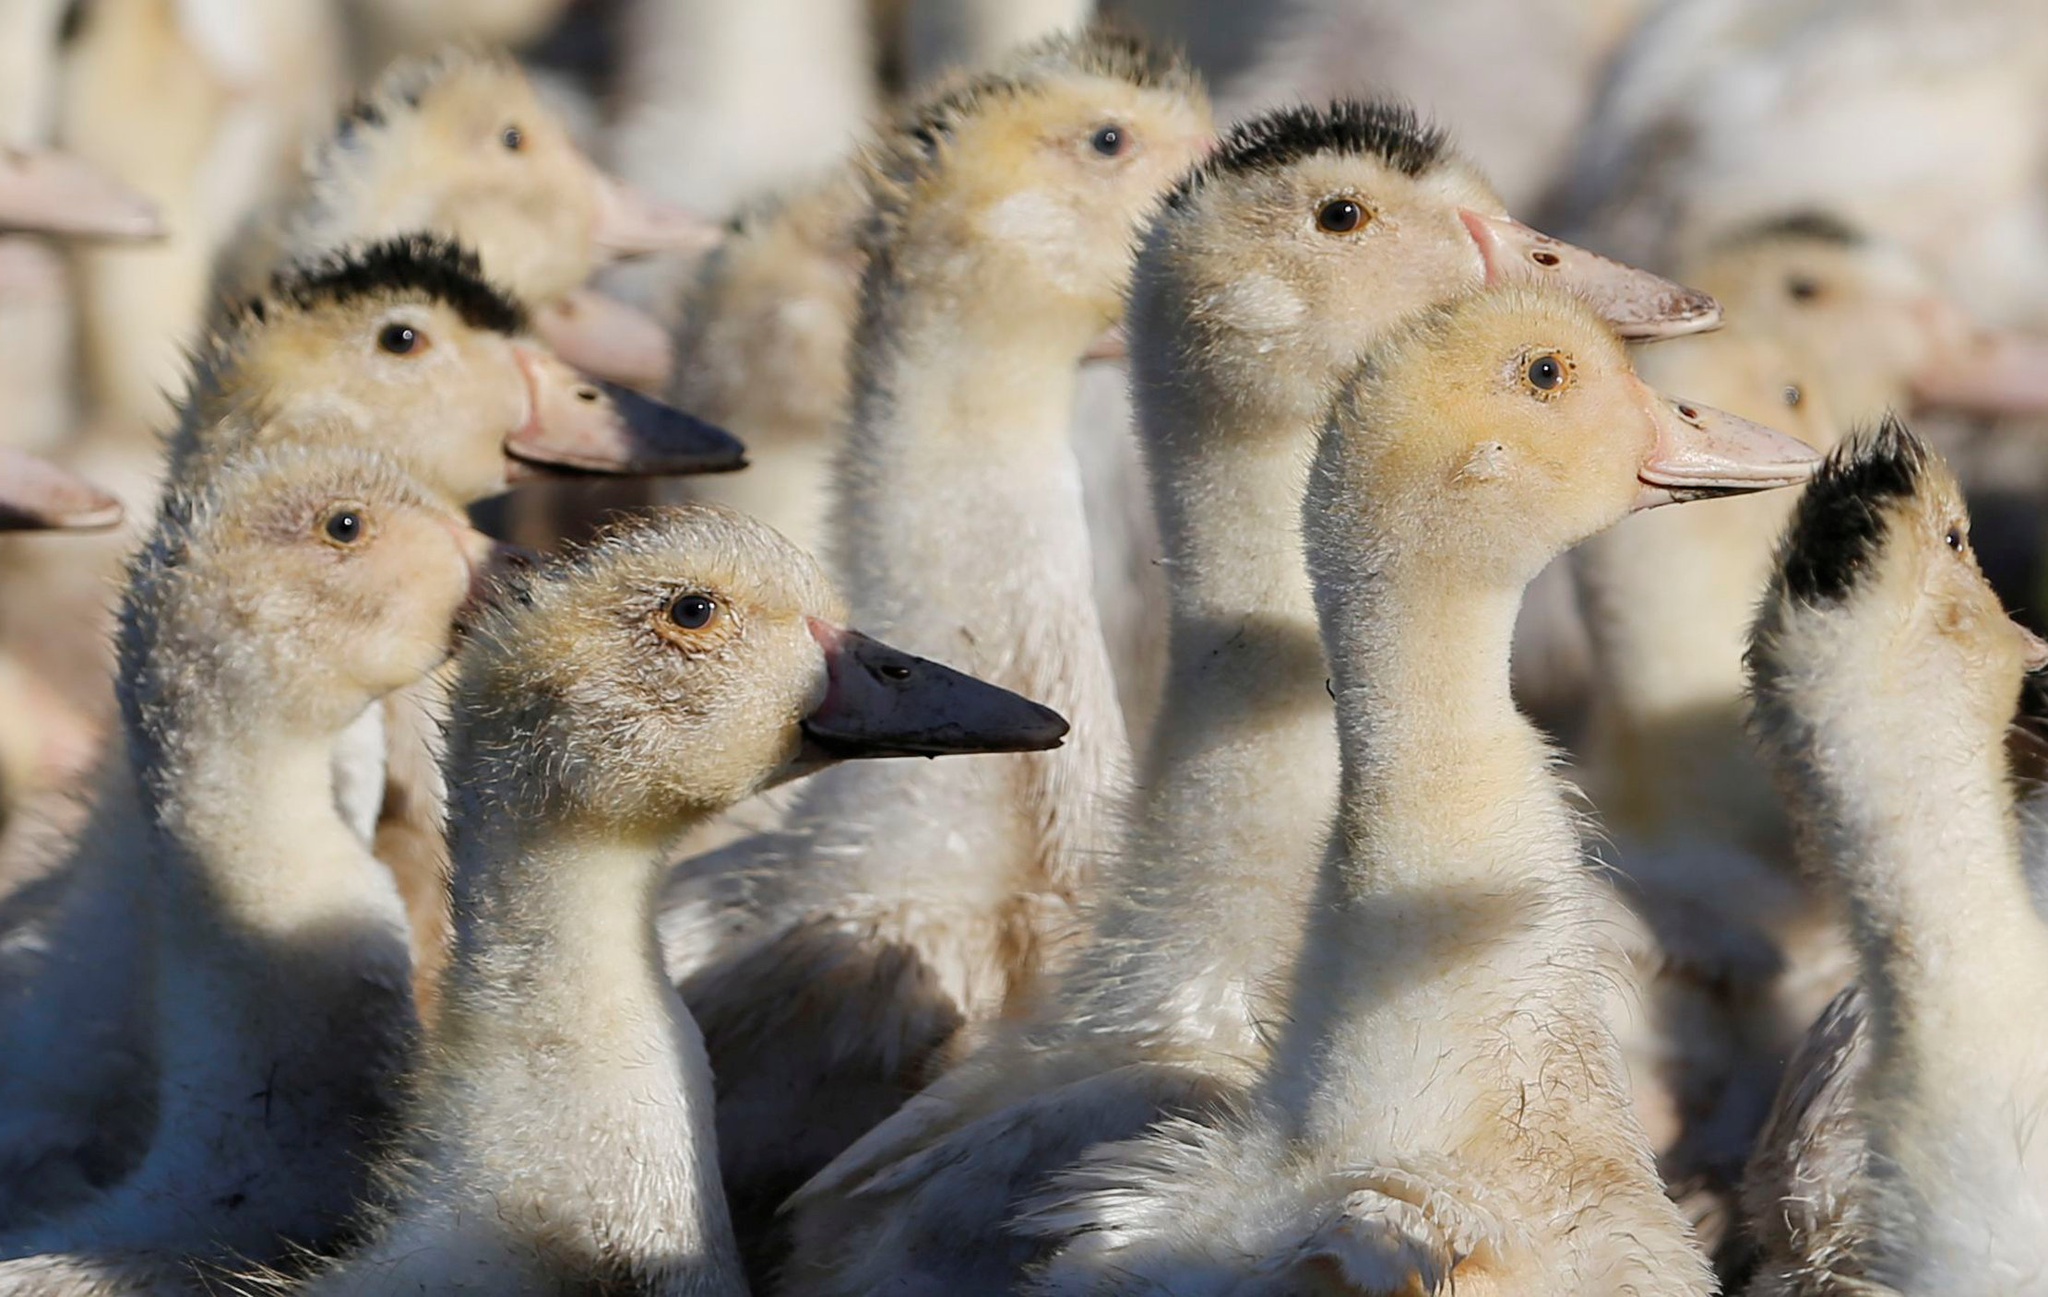 La France détecte des cas de grippe aviaire dans un élevage de canards |  Santé